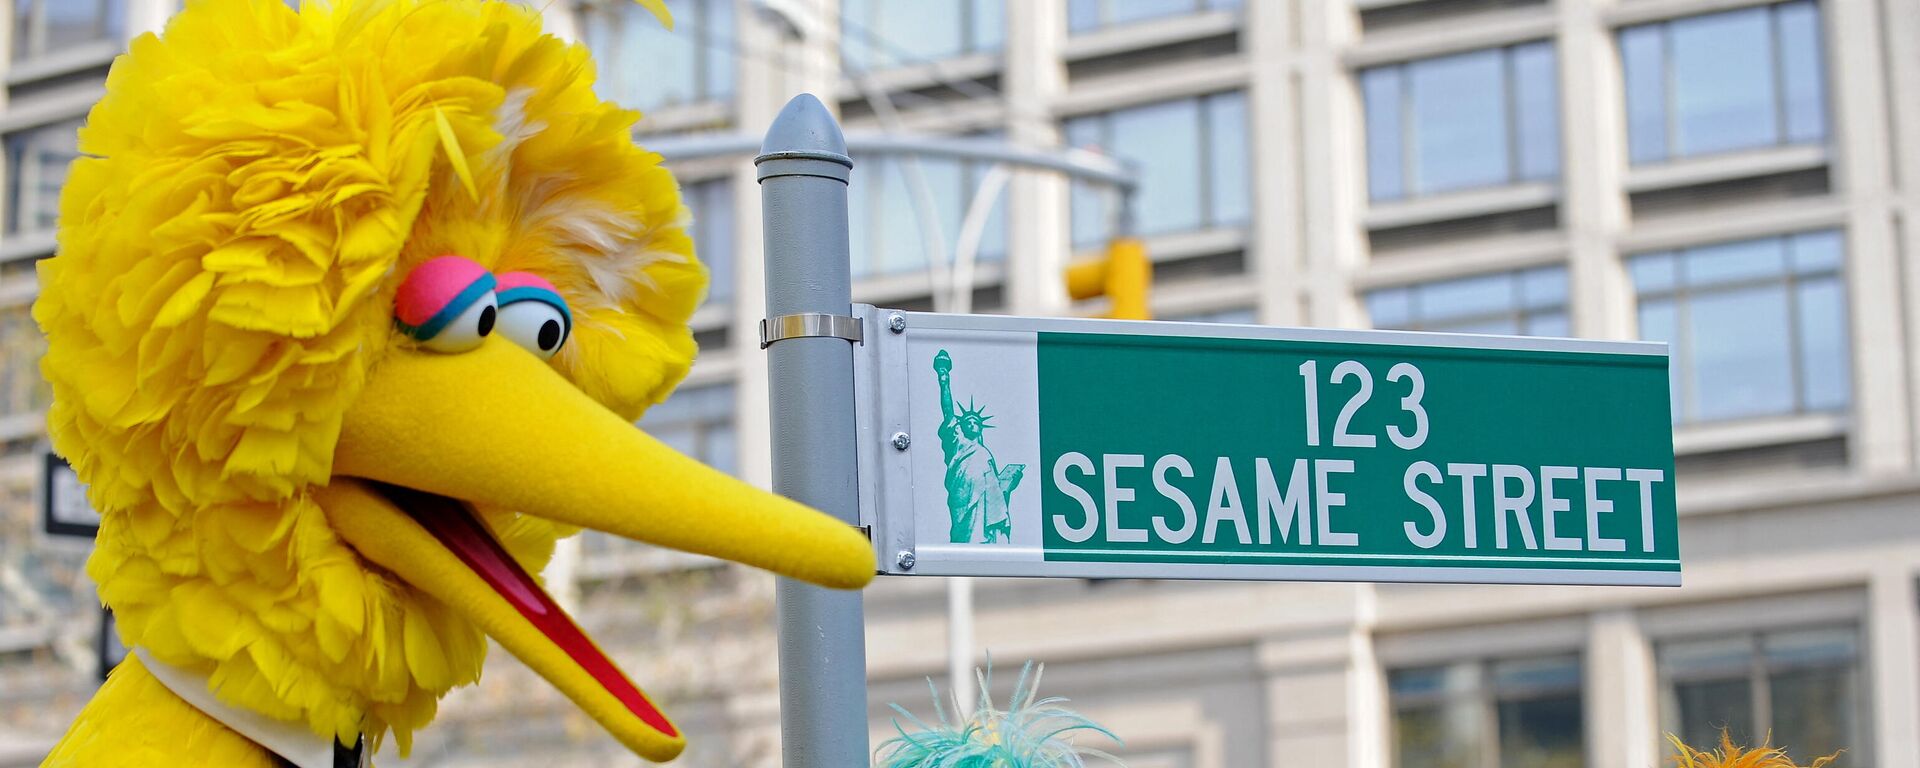 Didysis paukštis (kairėje) ir kiti personažai iš Sesame Street Niujorke - Sputnik Lietuva, 1920, 08.11.2021